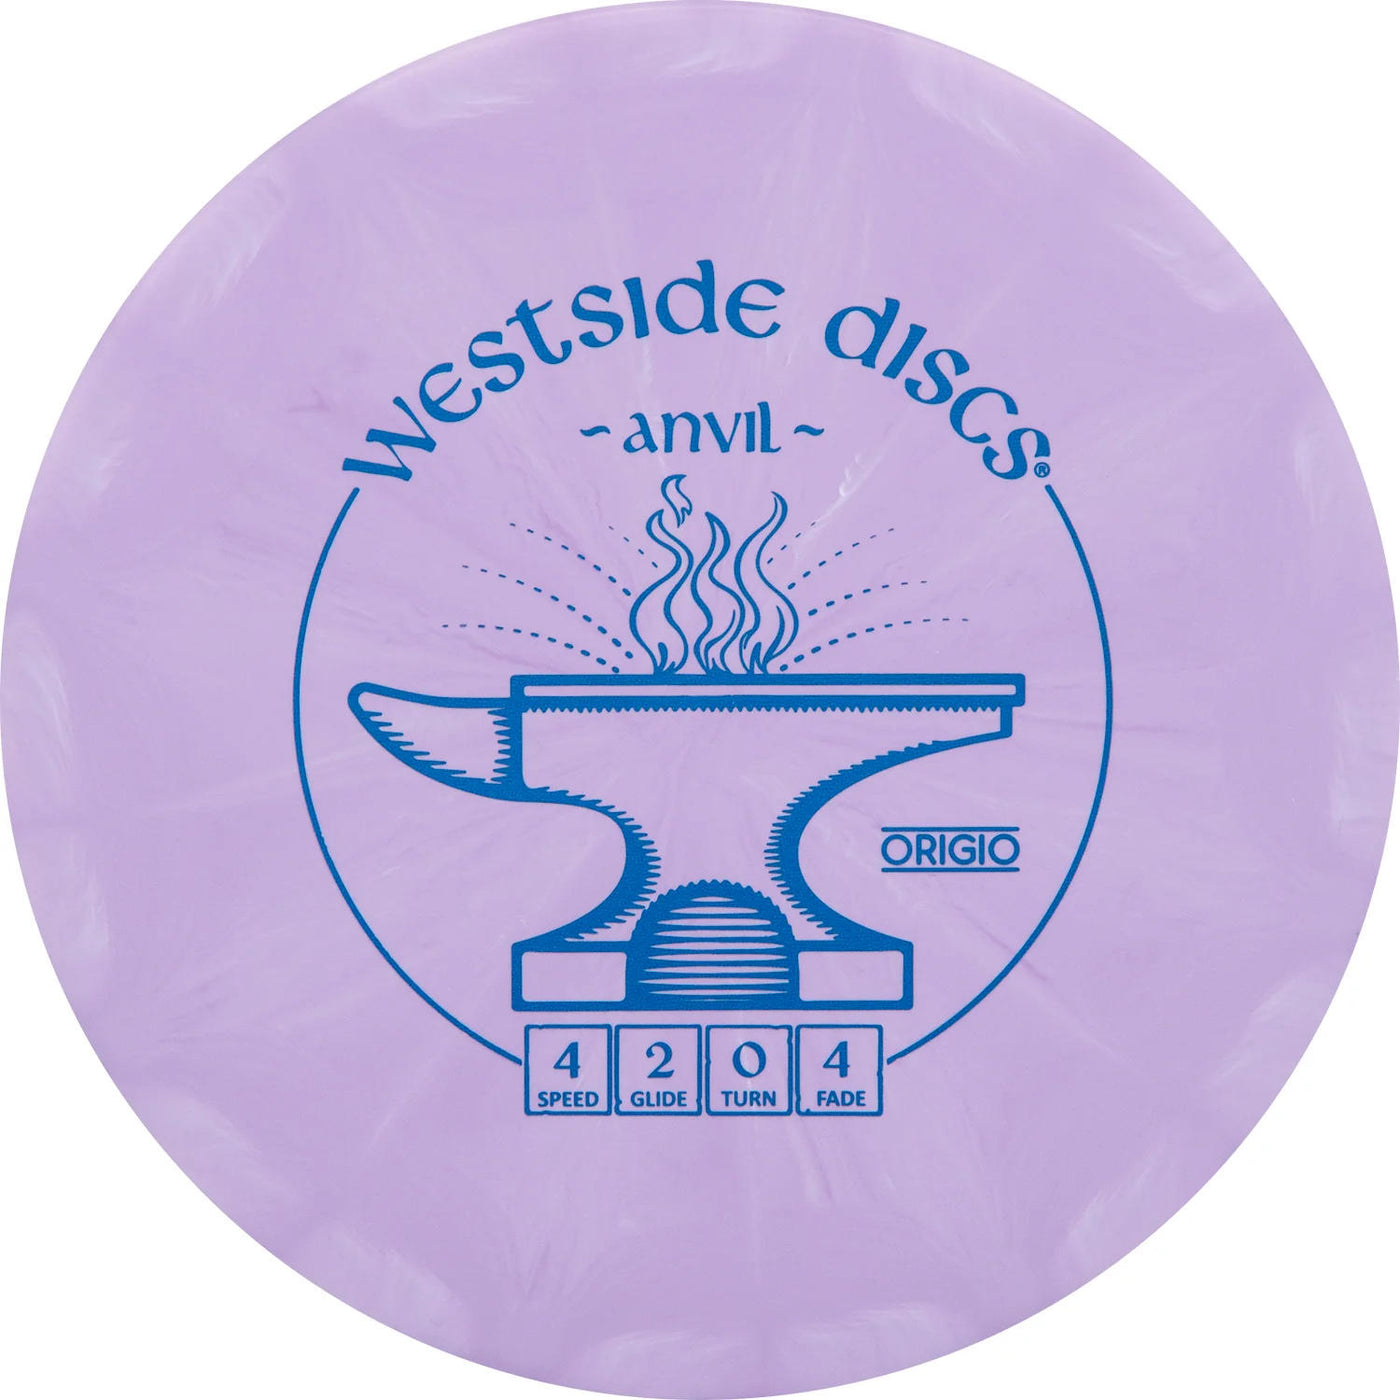 Westside Origio Burst Anvil Midrange - Speed 4